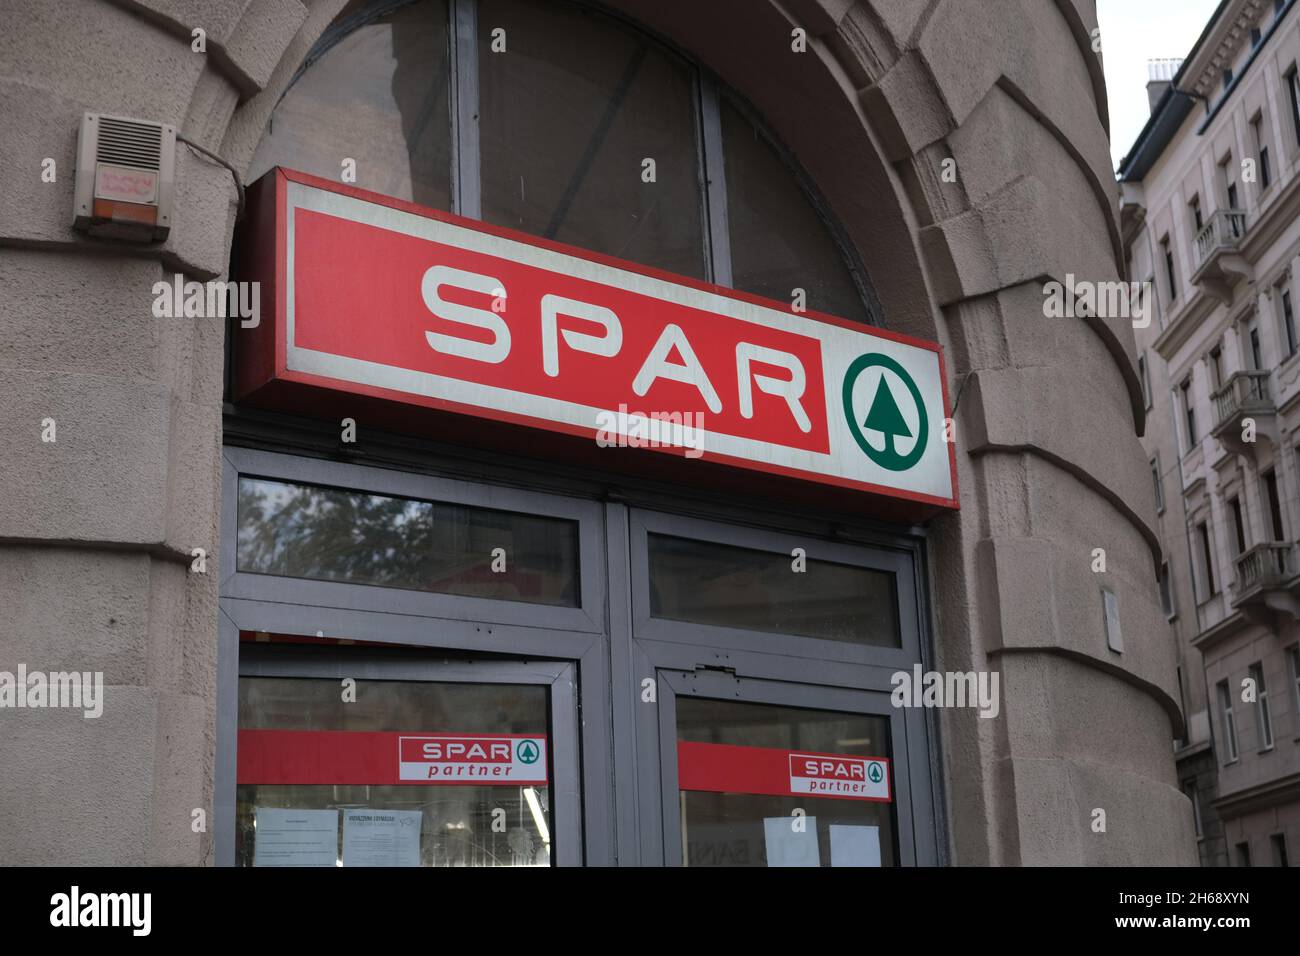 Budapest, Hungría - 1 de noviembre de 2021: Cartel de marca DE la tienda de supermercados SPAR, editorial ilustrativa. Foto de stock